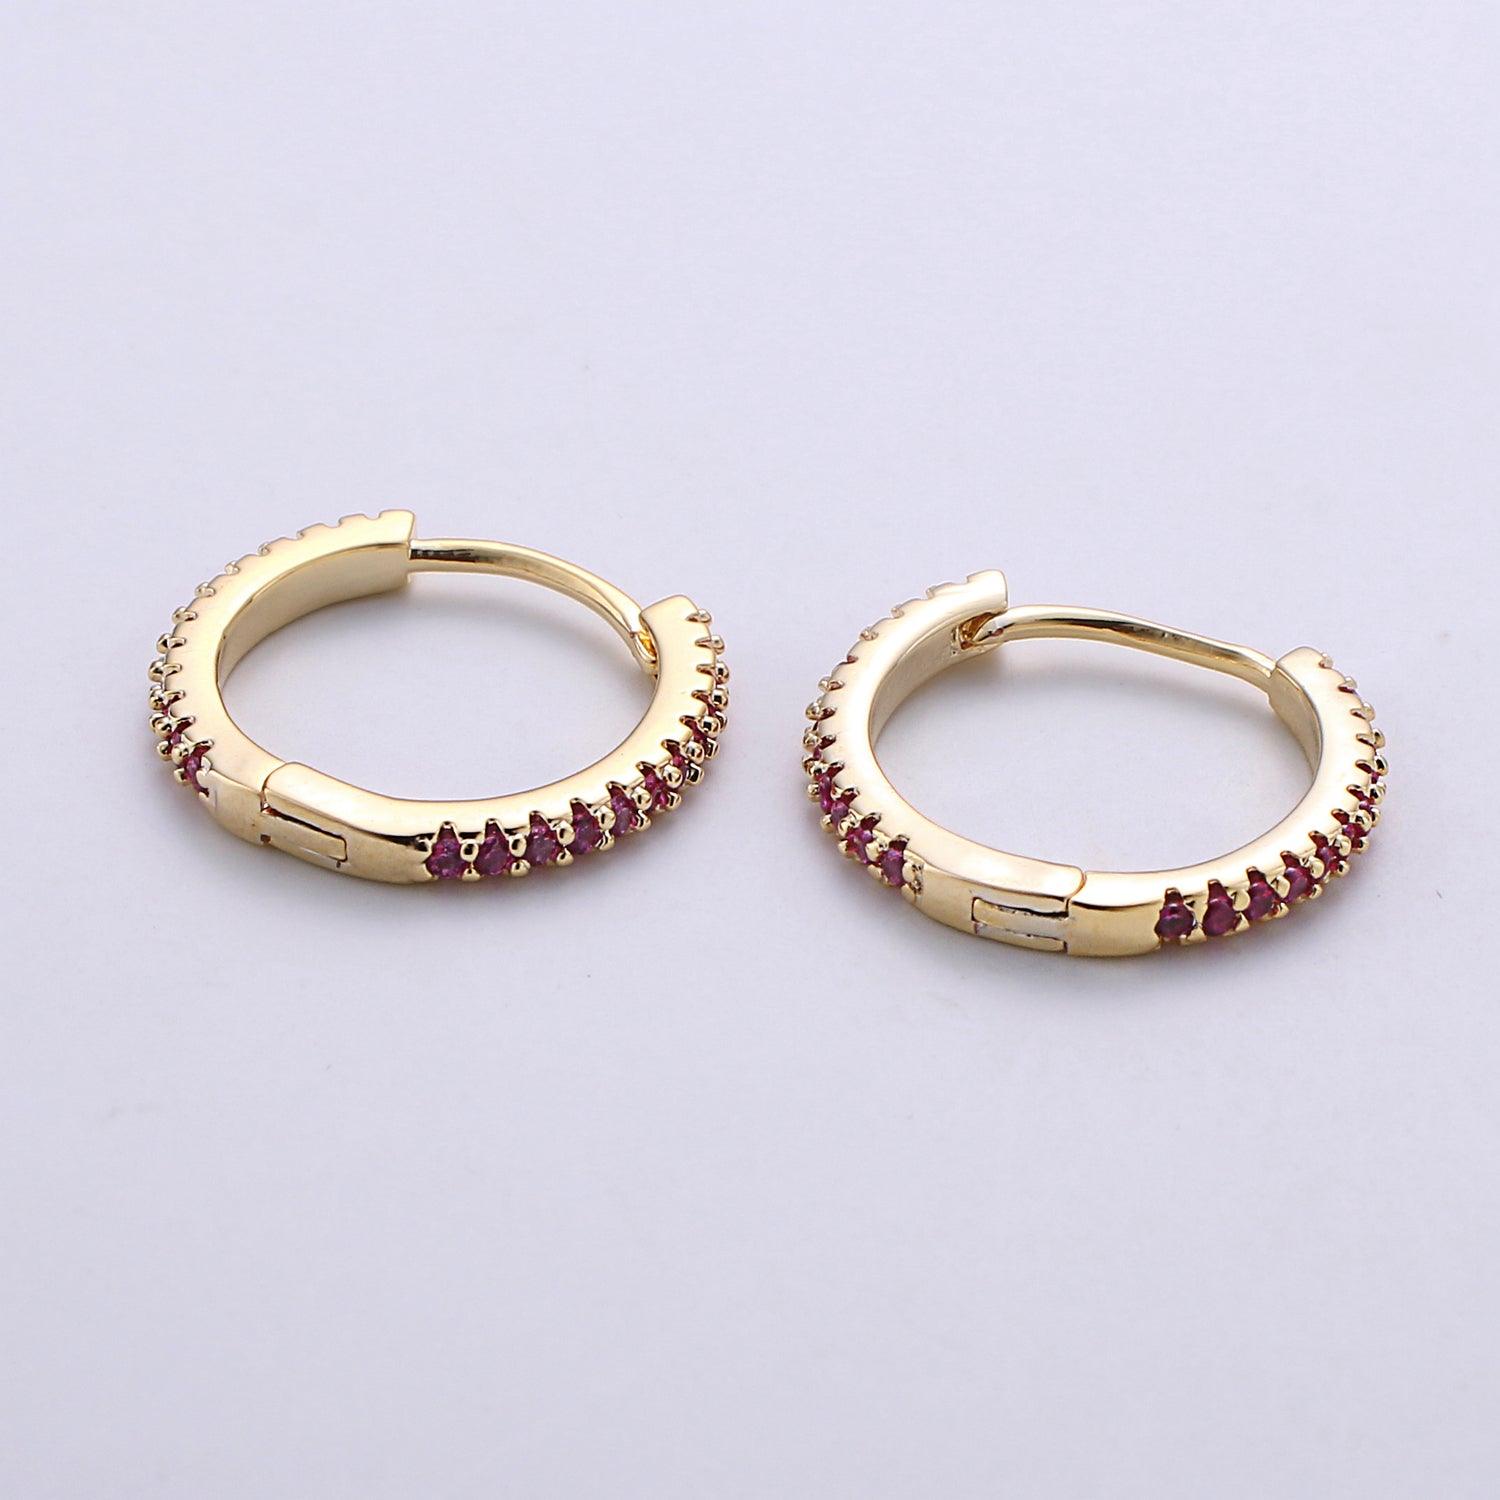 1 pair Gold hoop earrings - huggie hoops earrings - Dainty hoops Earring - Tiny hoops - Thin hoops - Minimalist Jewelry Micro Pave Earring - DLUXCA